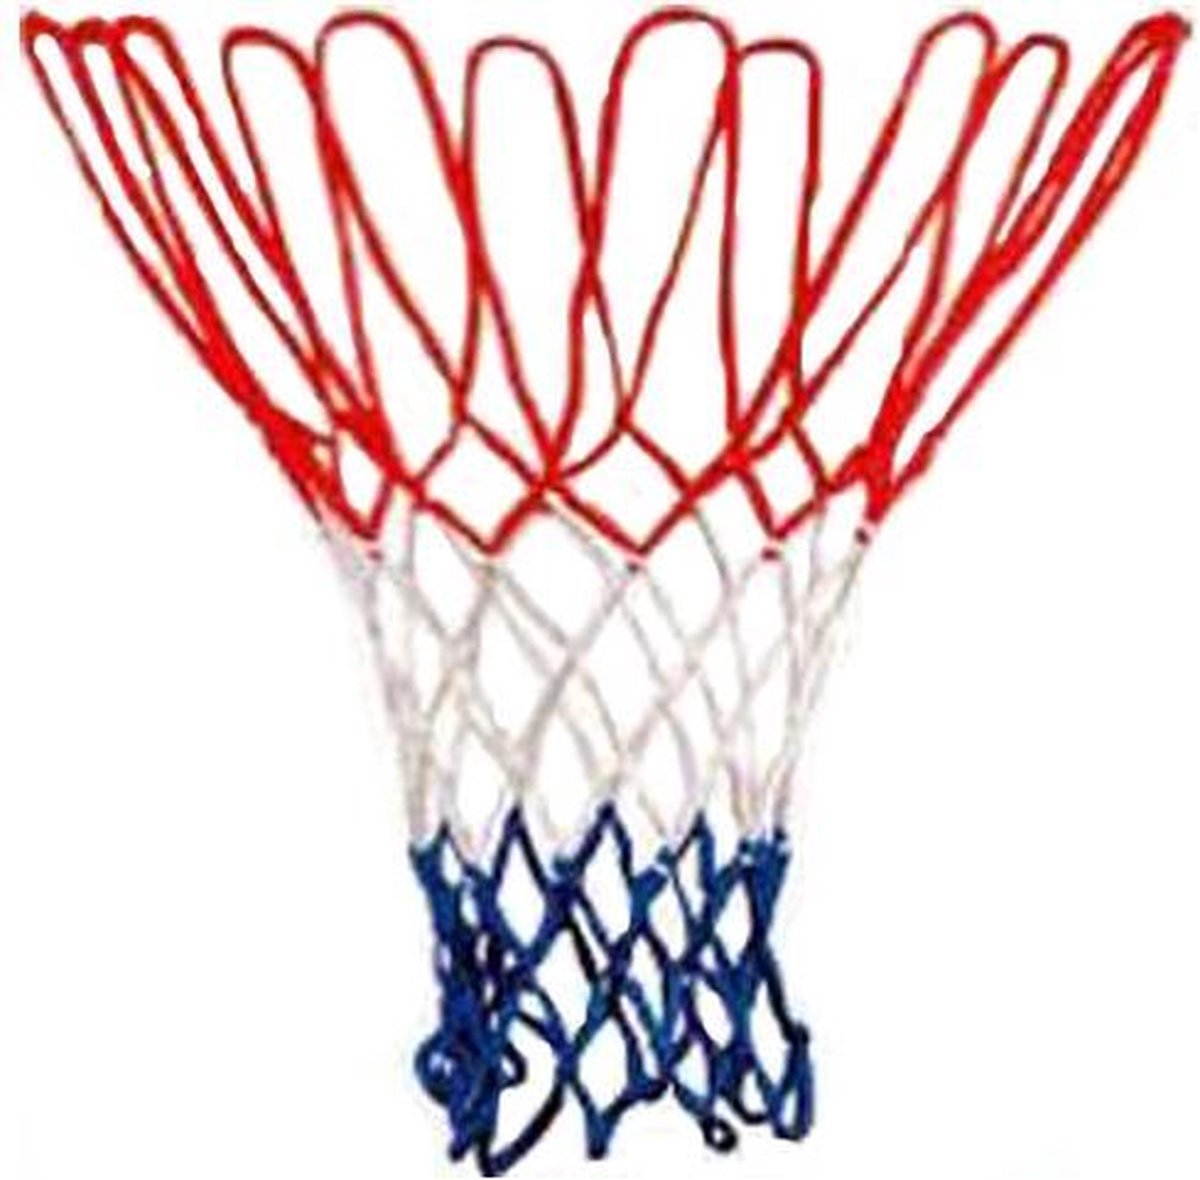 Basketbalnet - Merkloos